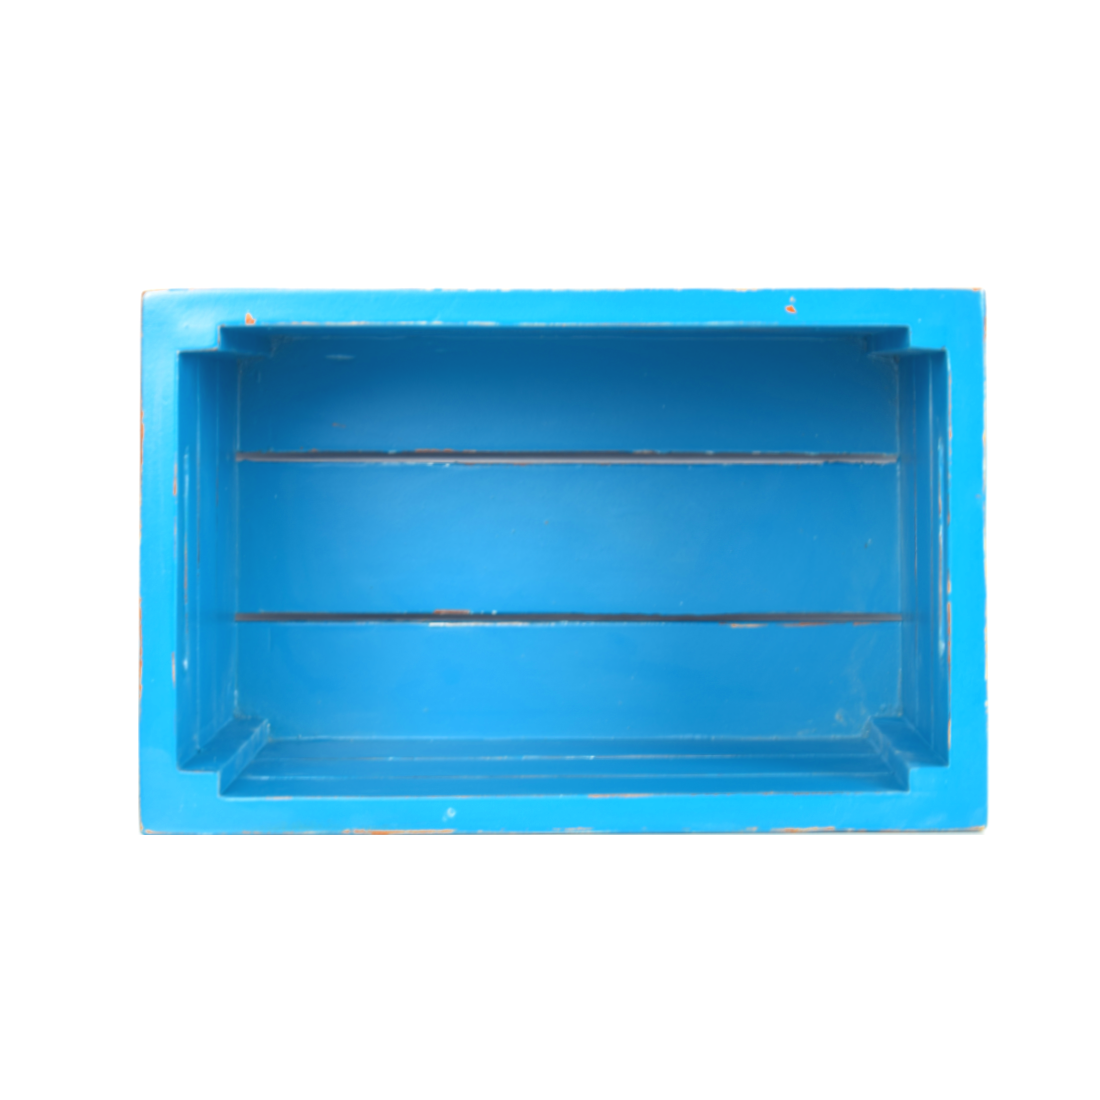 CustHum-Crate-multipurpose pallet crate box (teal, top view)